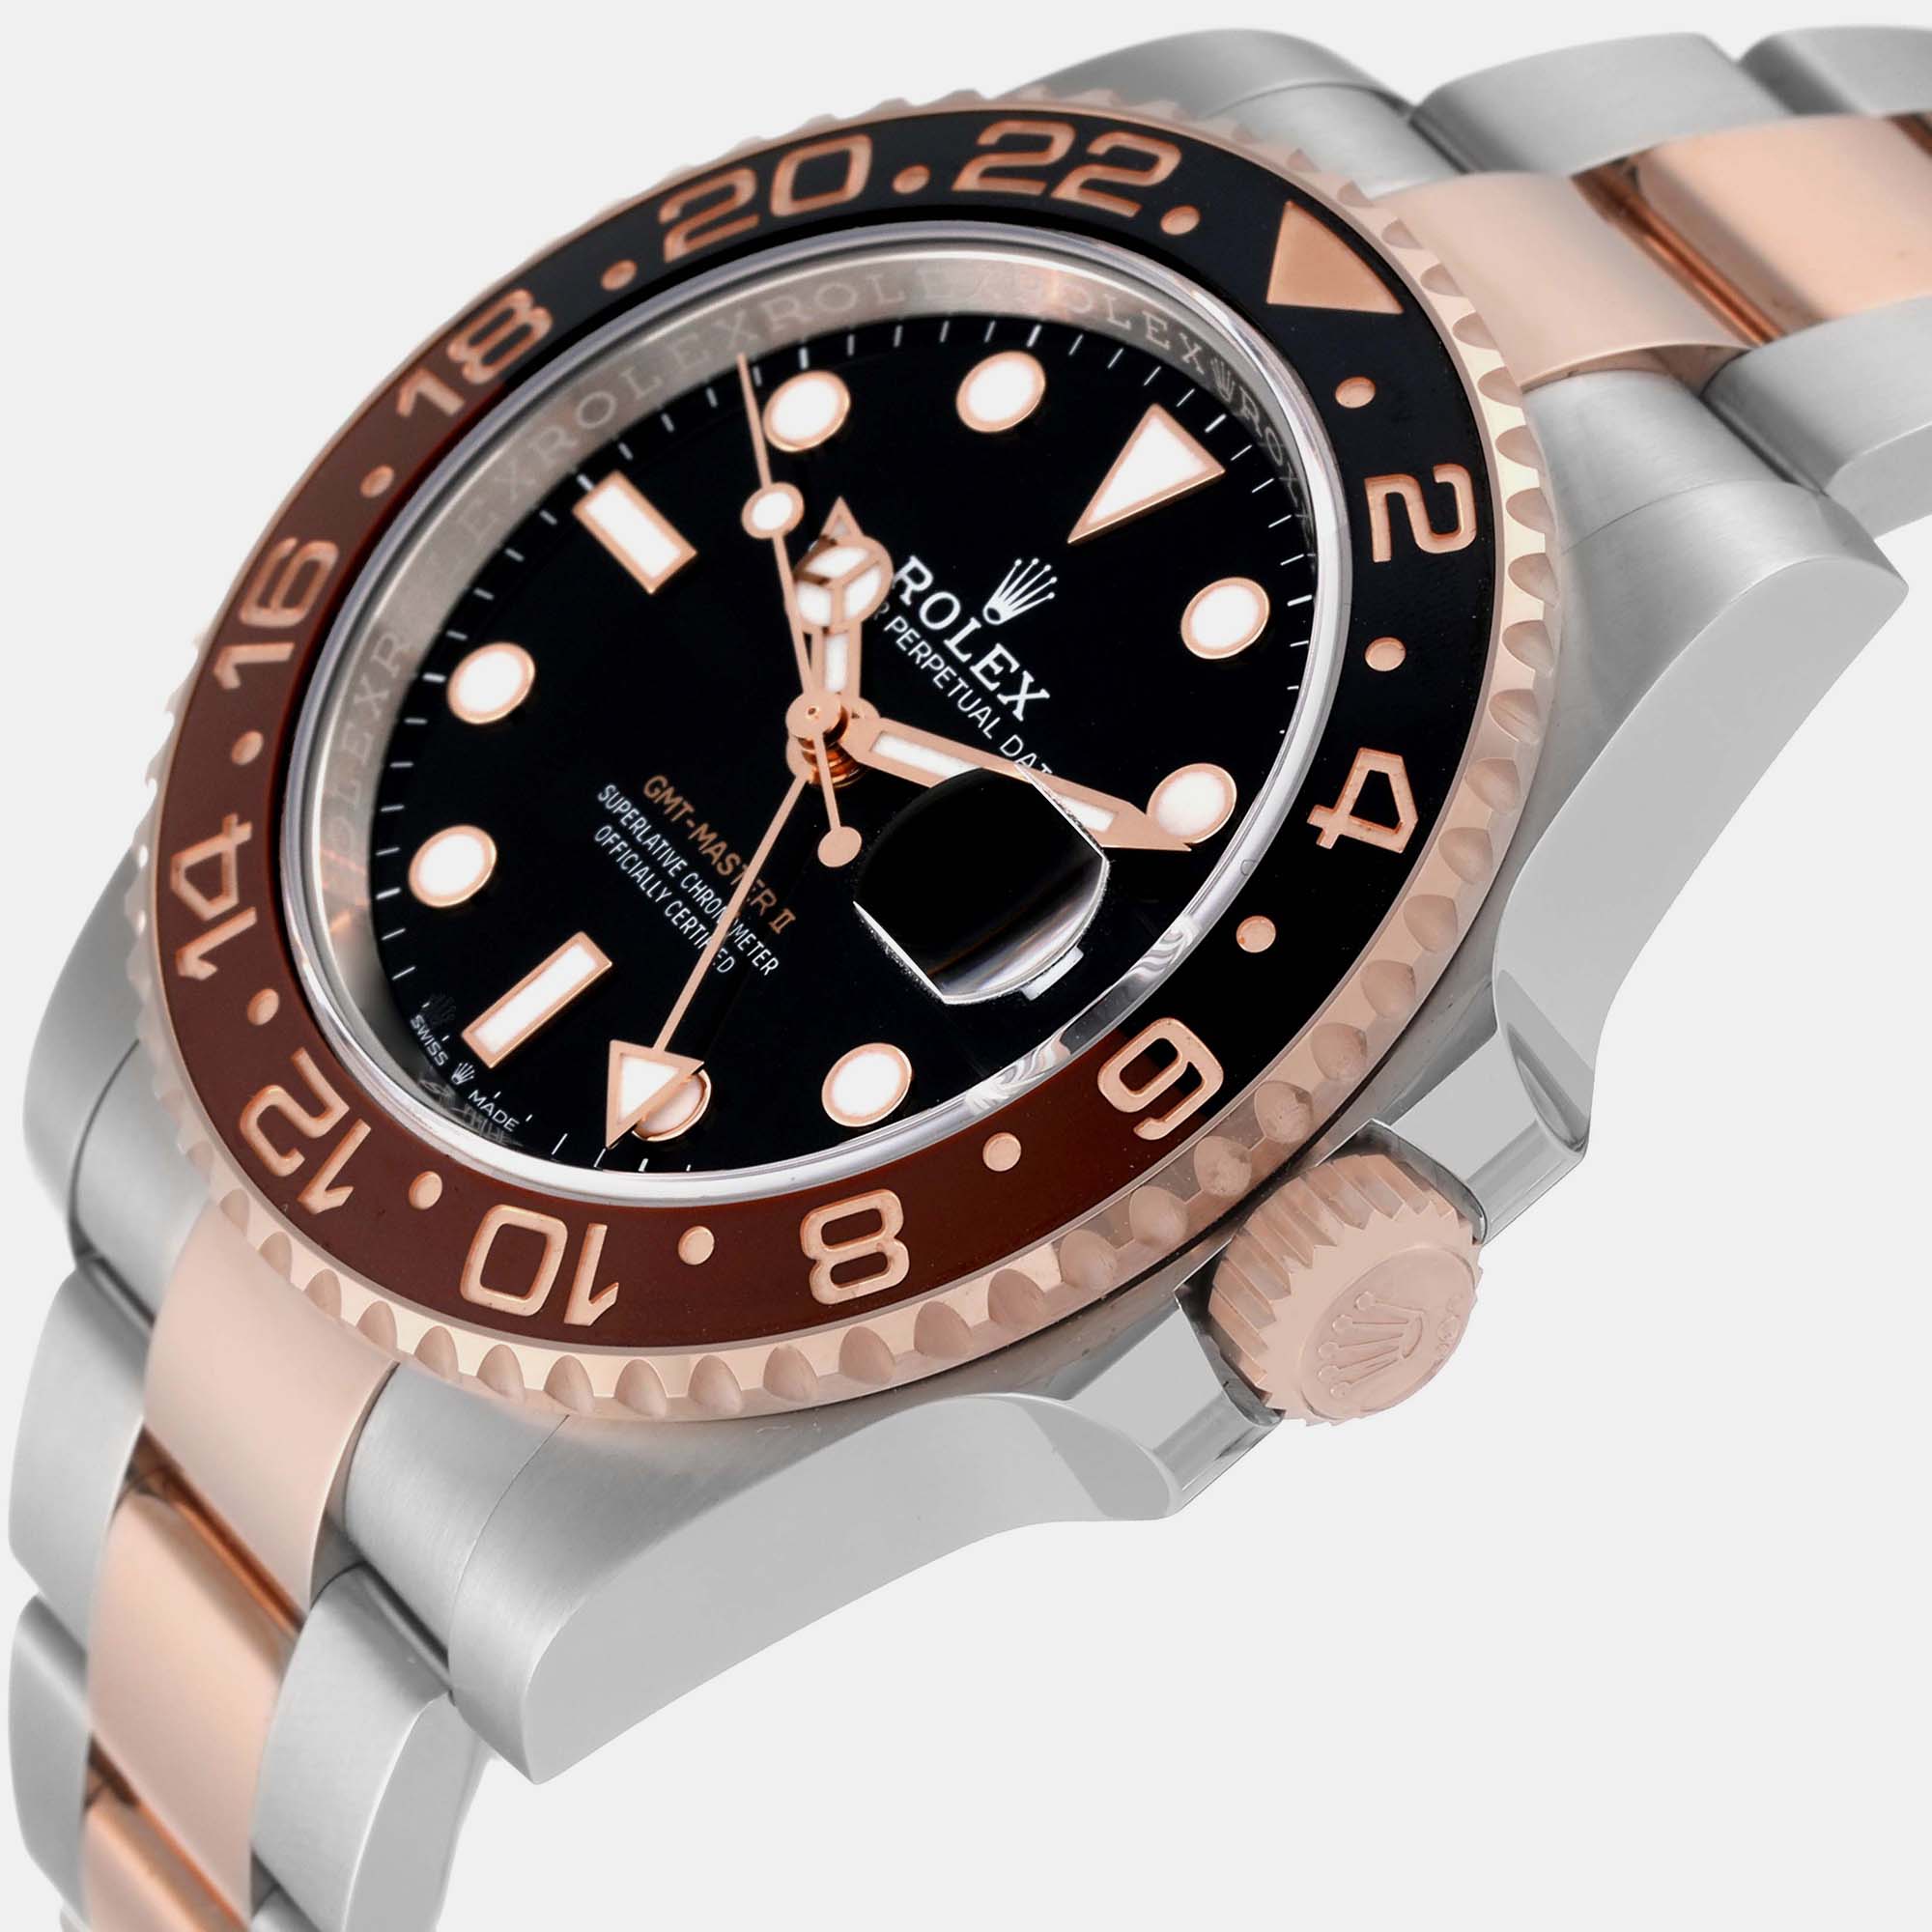 

Rolex GMT Master II Steel Rose Gold Mens Watch 126711 Unworn 40 mm, Black